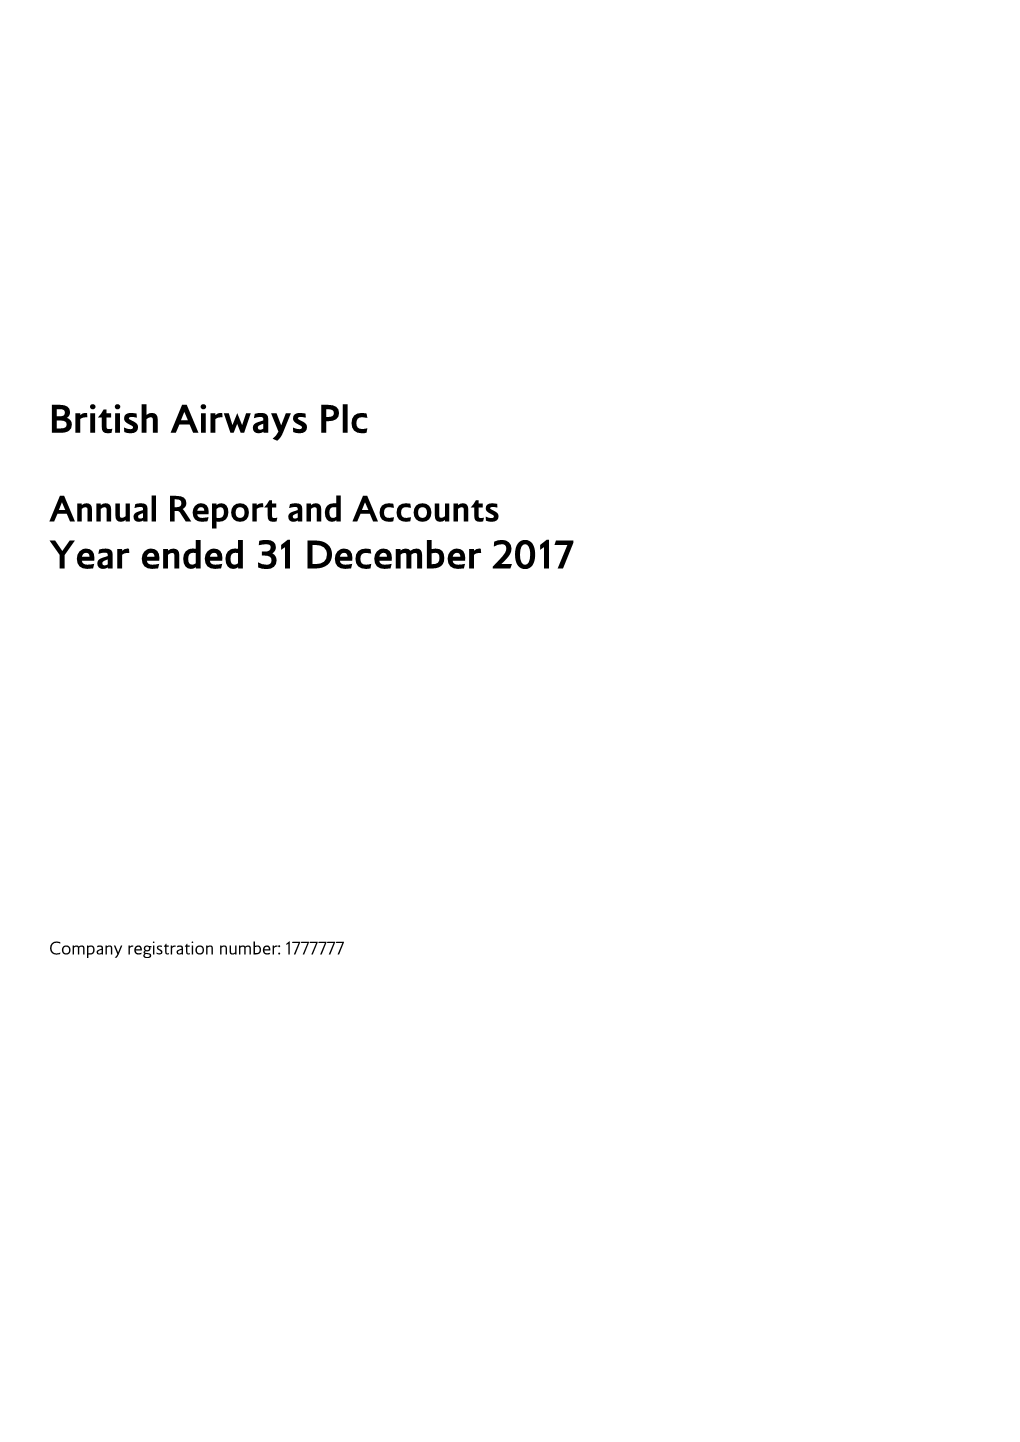 British Airways Plc Year Ended 31 December 2017